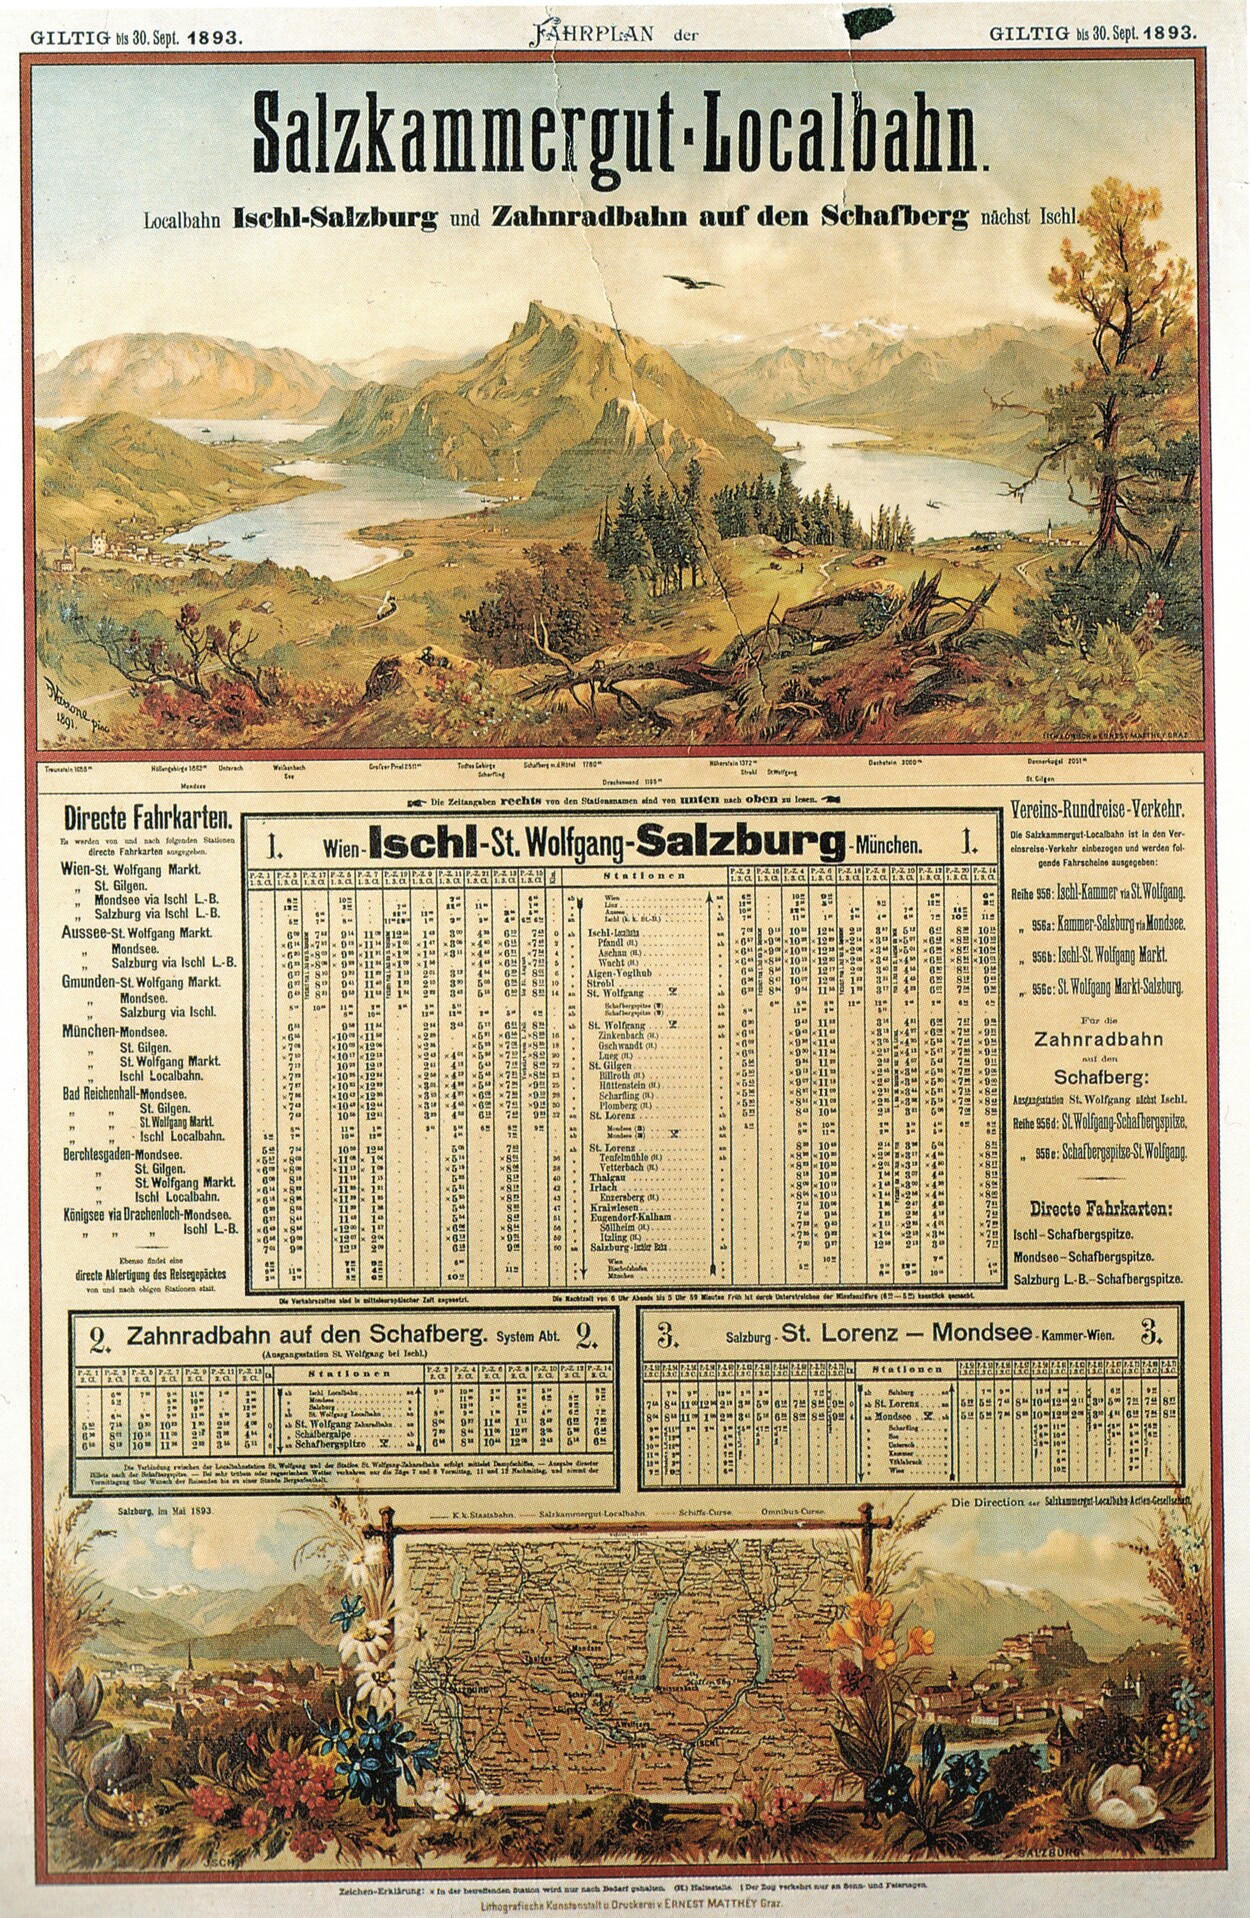 Fahrplan der Salzkammergut-Localbahn 1893